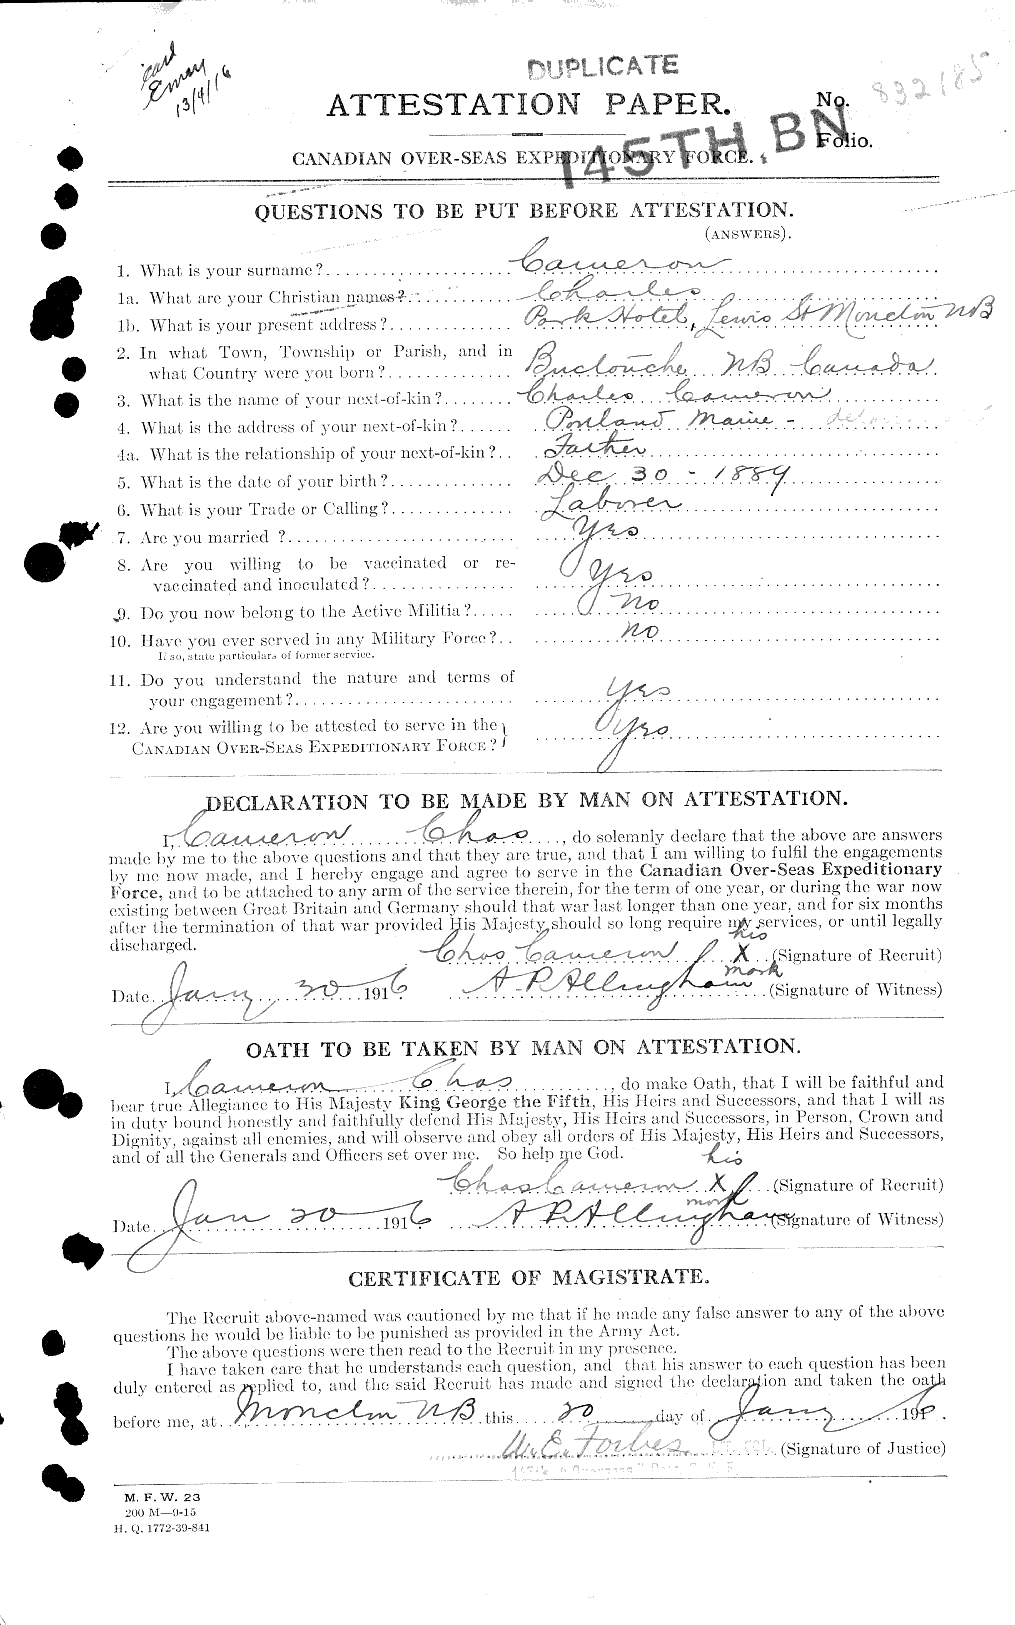 Dossiers du Personnel de la Première Guerre mondiale - CEC 002594a